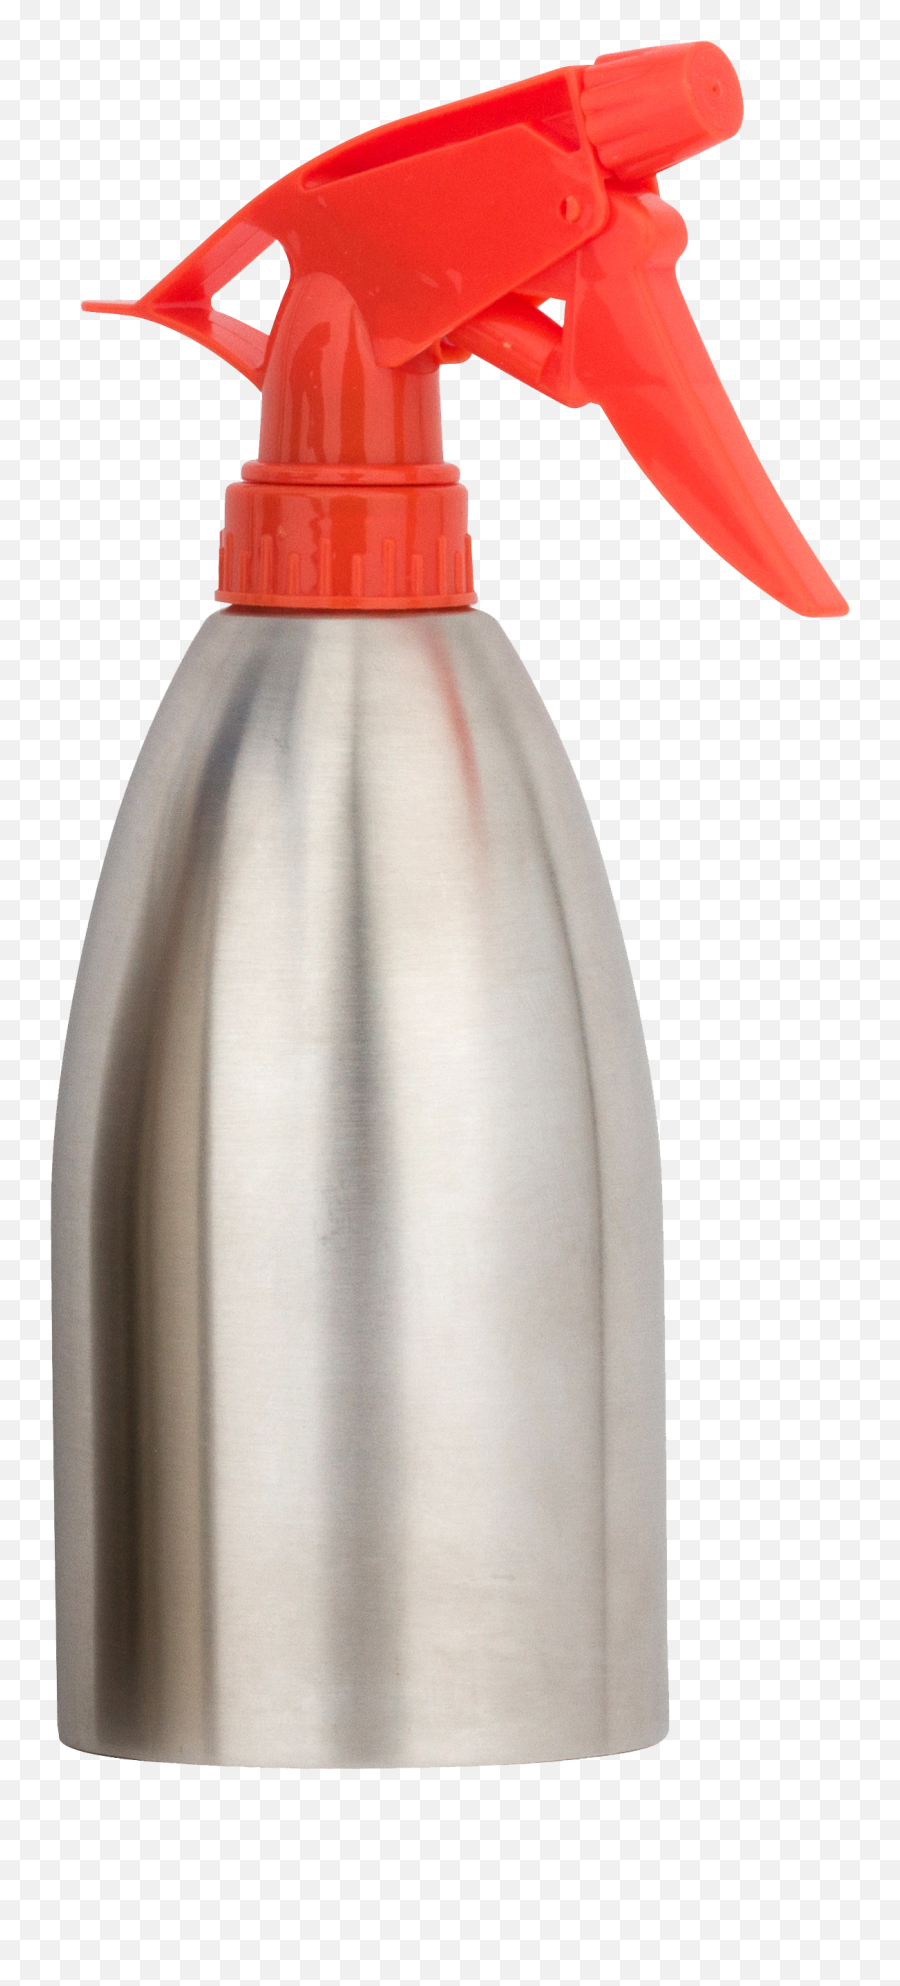 Spray Bottle Png - Bulk Stainless Steel Spray Bottles 40 Household Supply,Spray Bottle Png